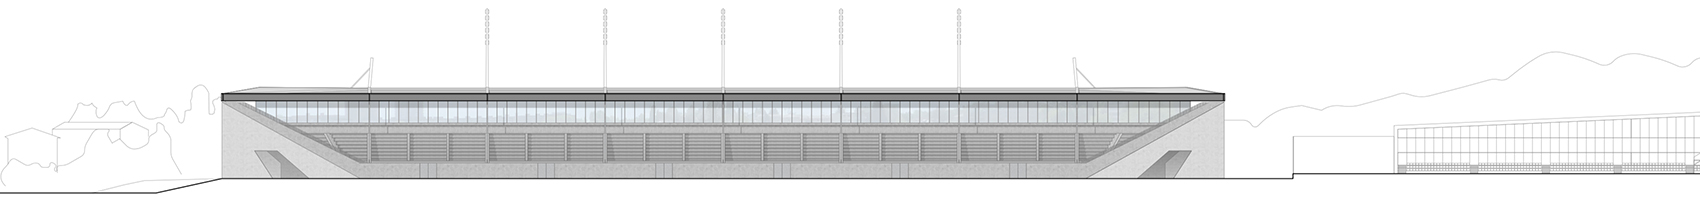 洛桑市新足球场馆，瑞士/散发宁静感的市郊体育设施-56